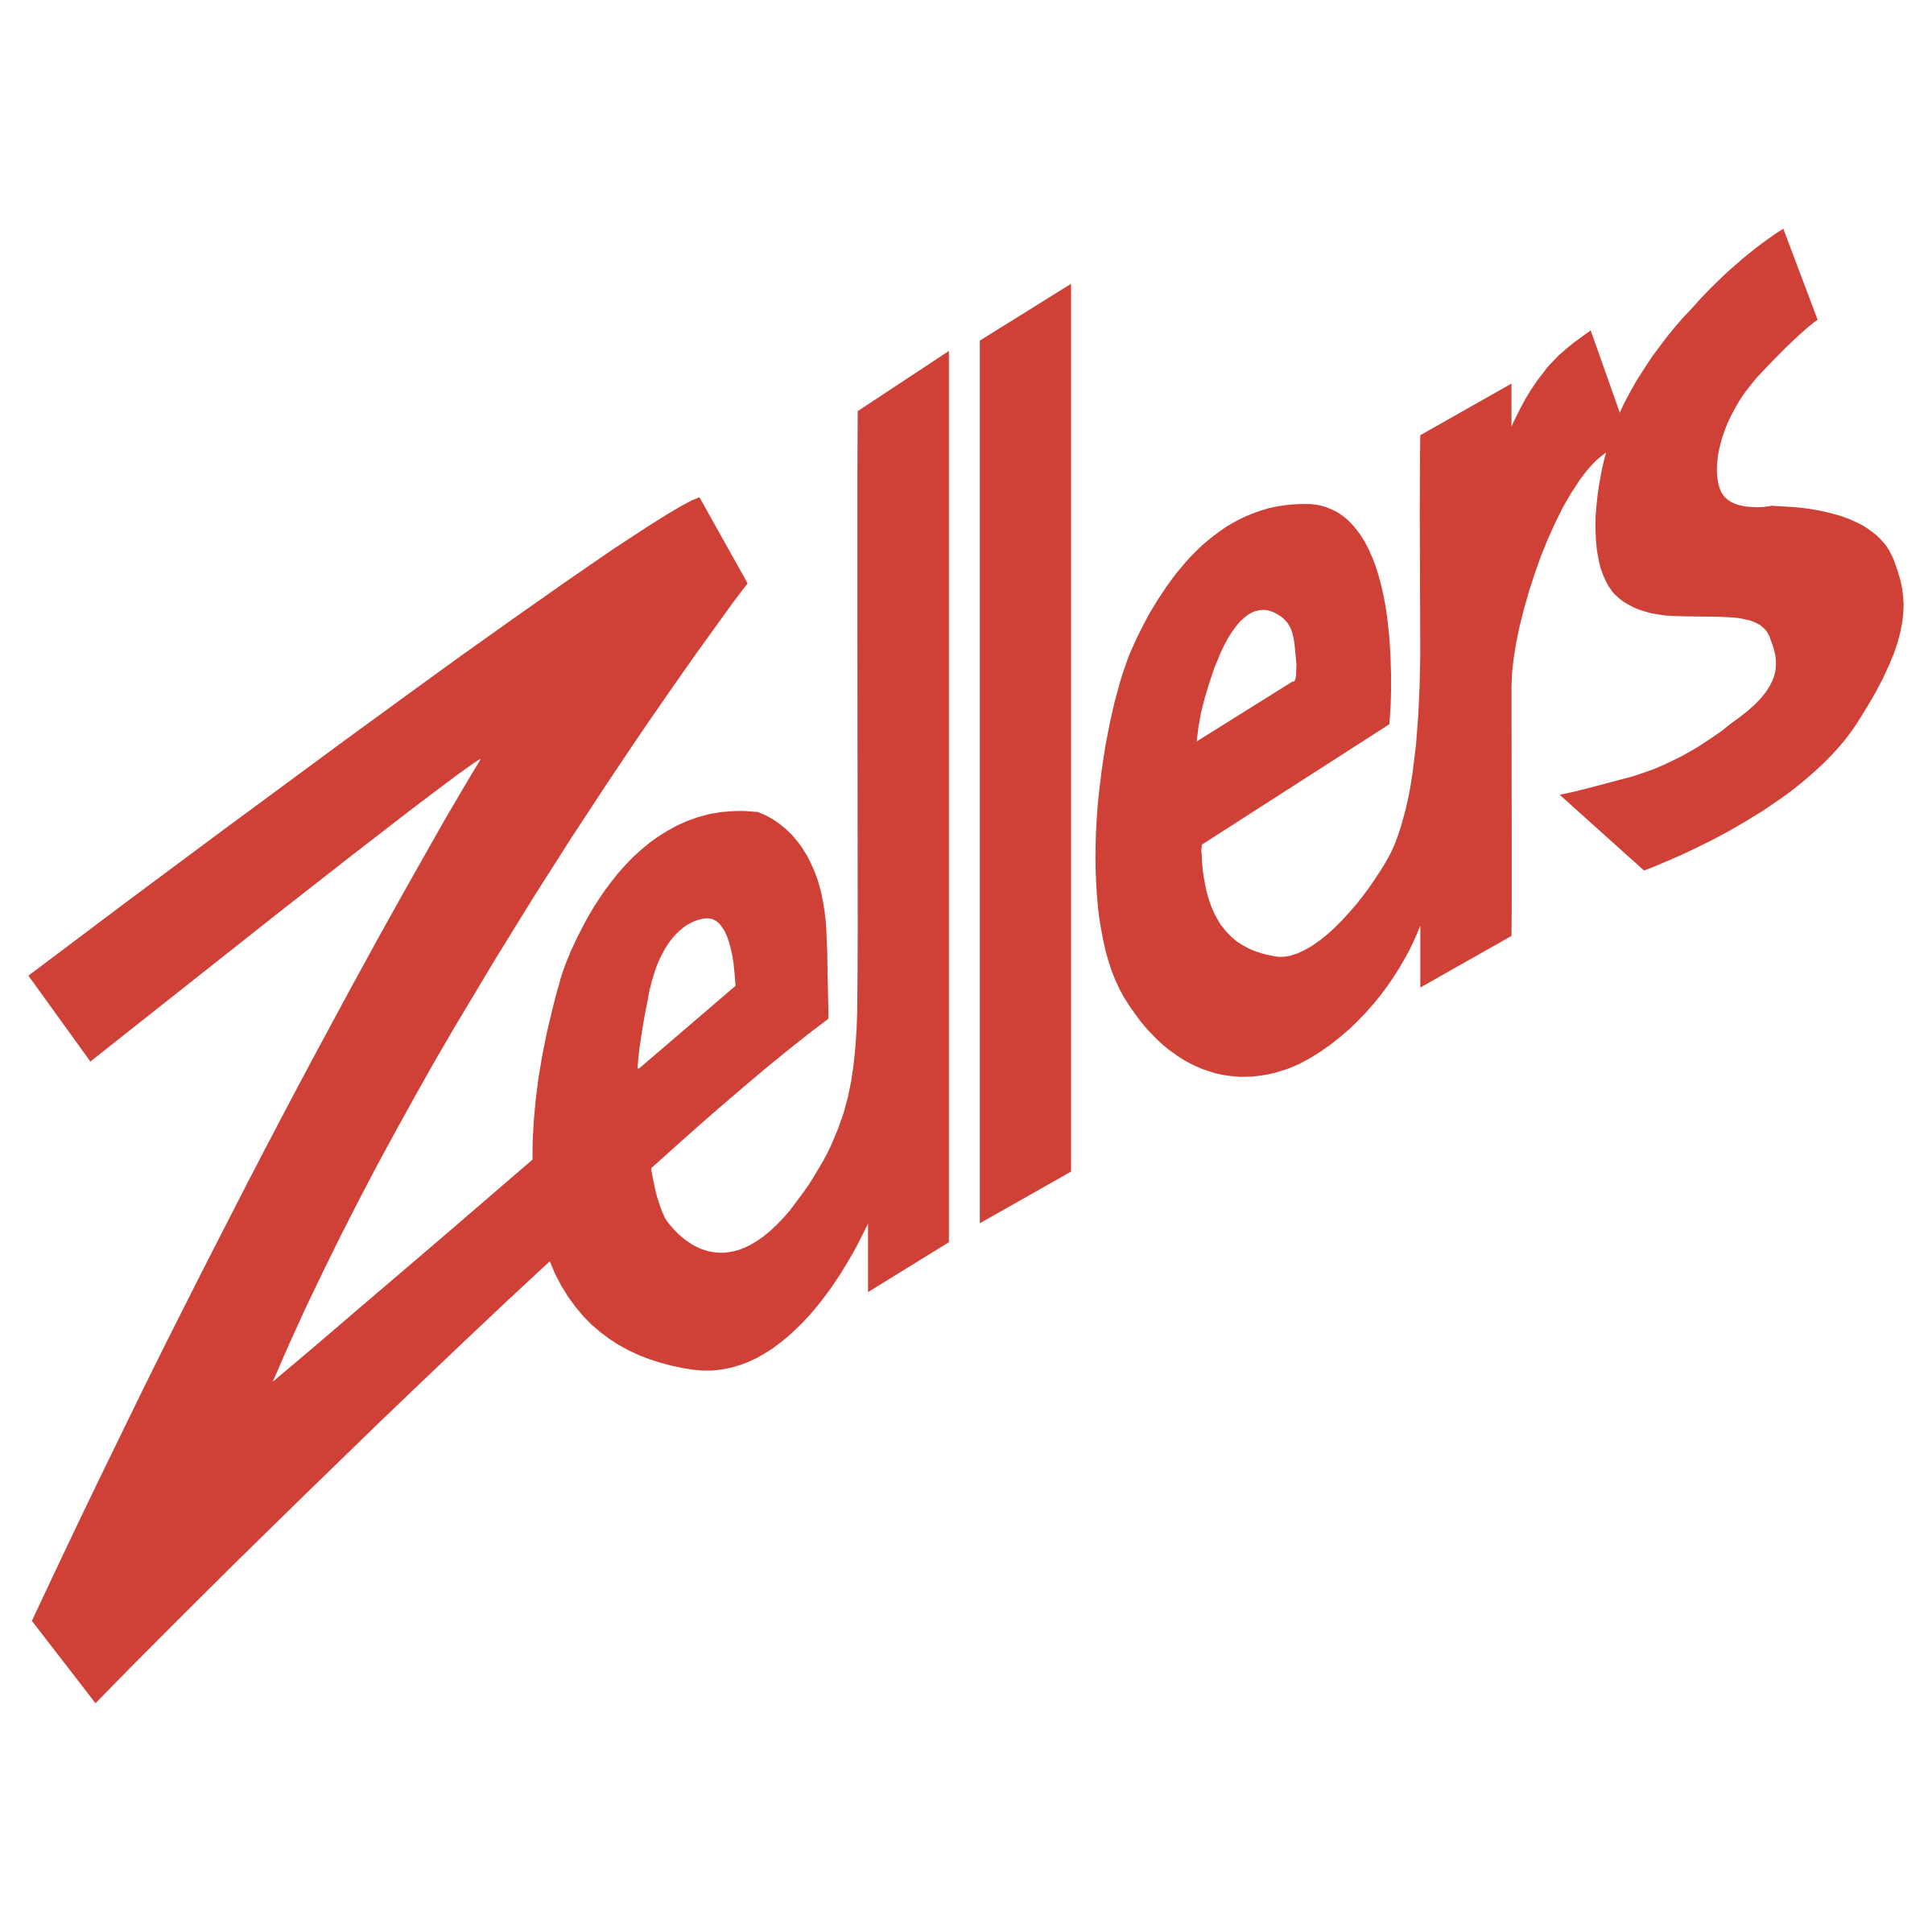 Zellers Logo - Zellers Logo PNG Transparent & SVG Vector - Freebie Supply